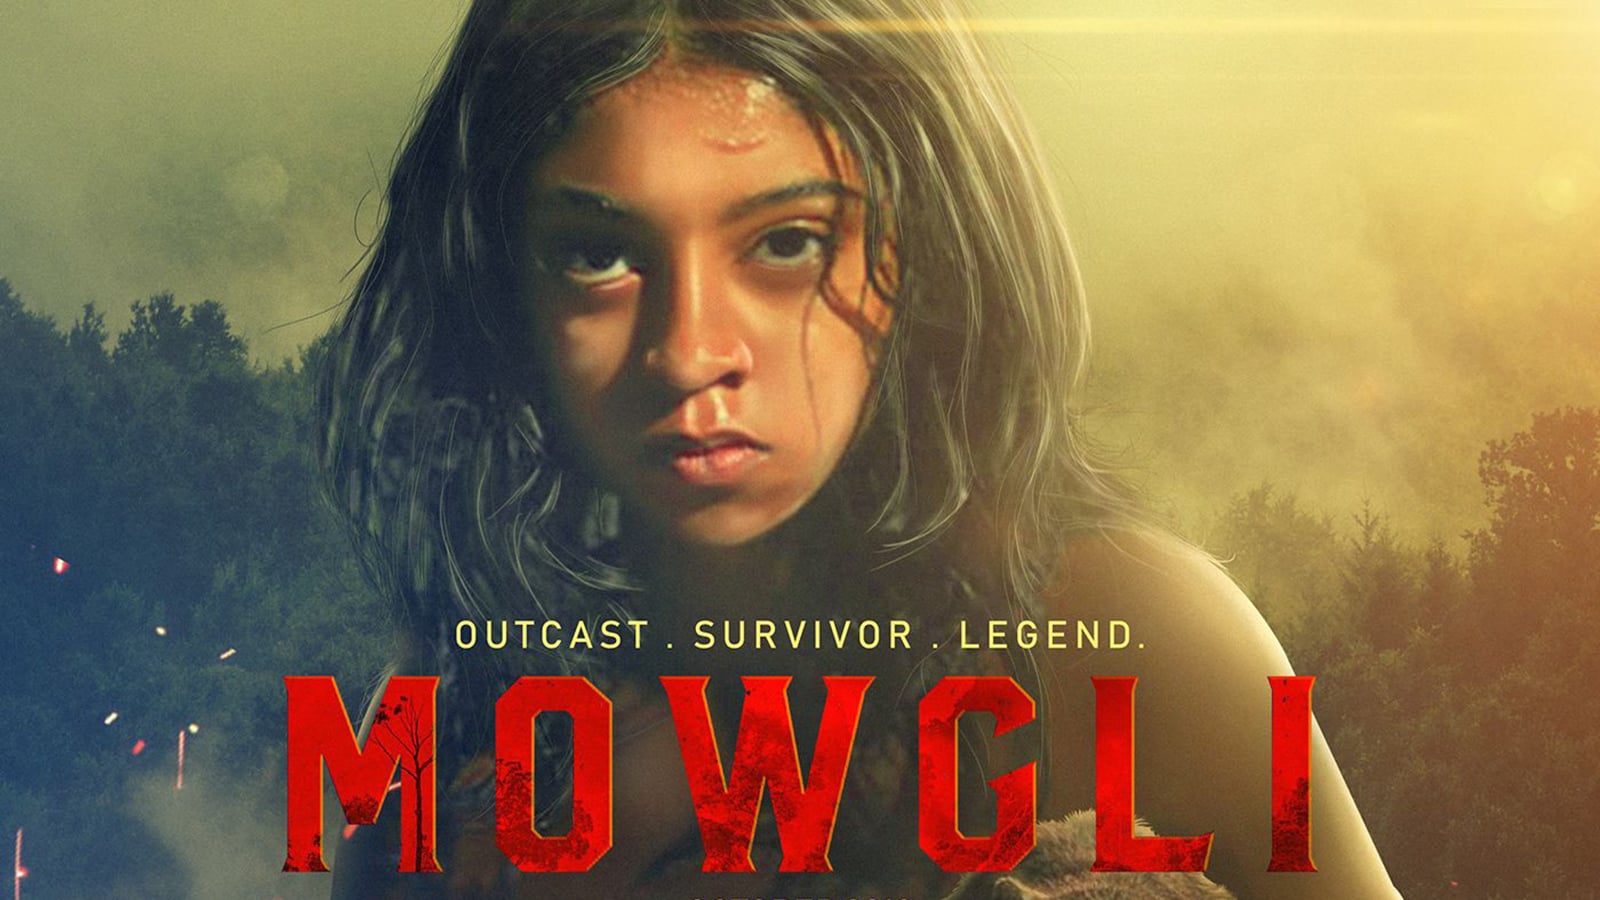 RÃ©sultat de recherche d'images pour "mowgli film"